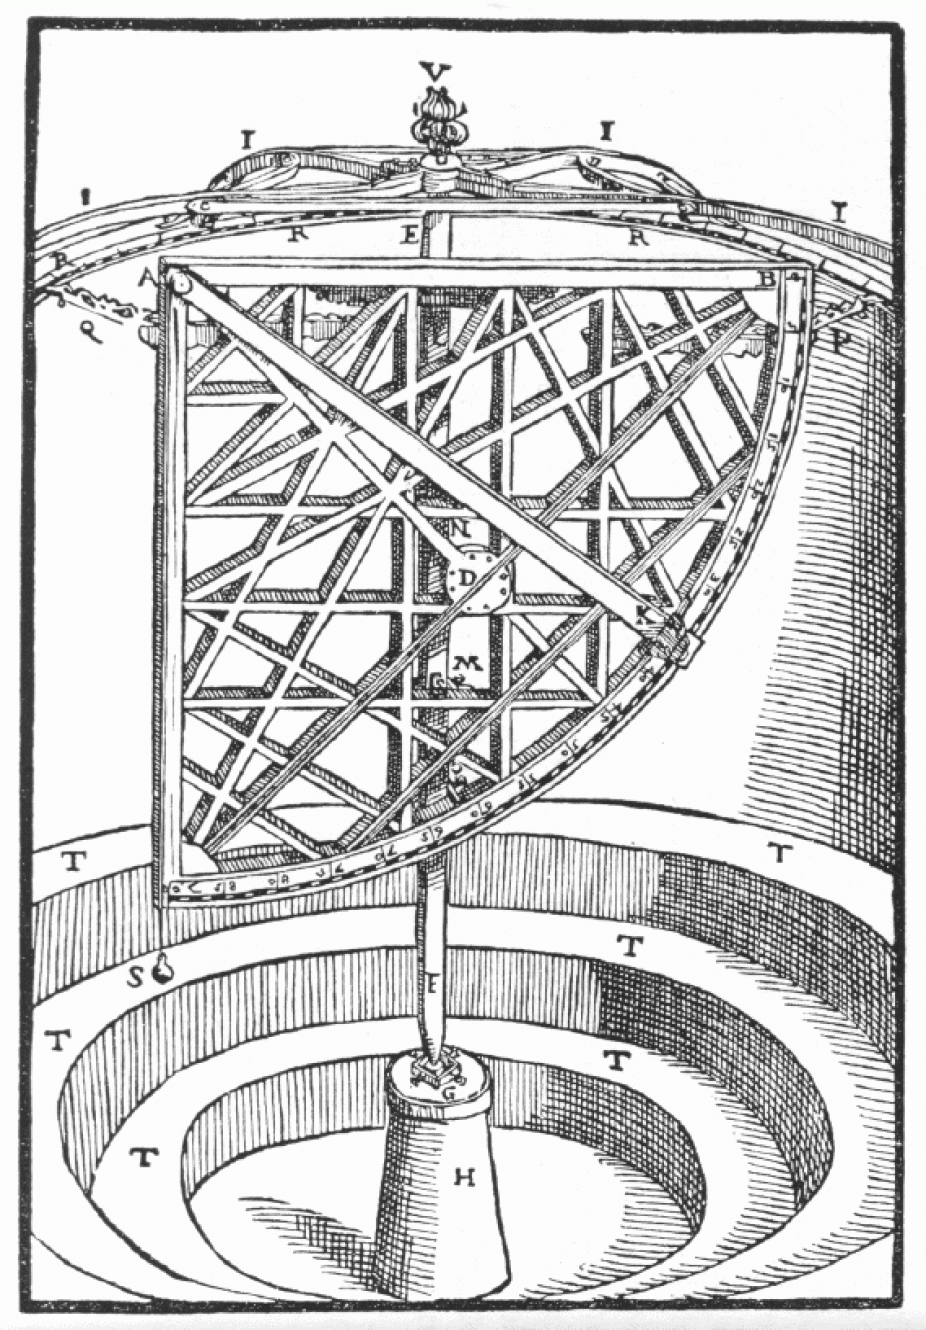 1586 revolving wooden quadrant